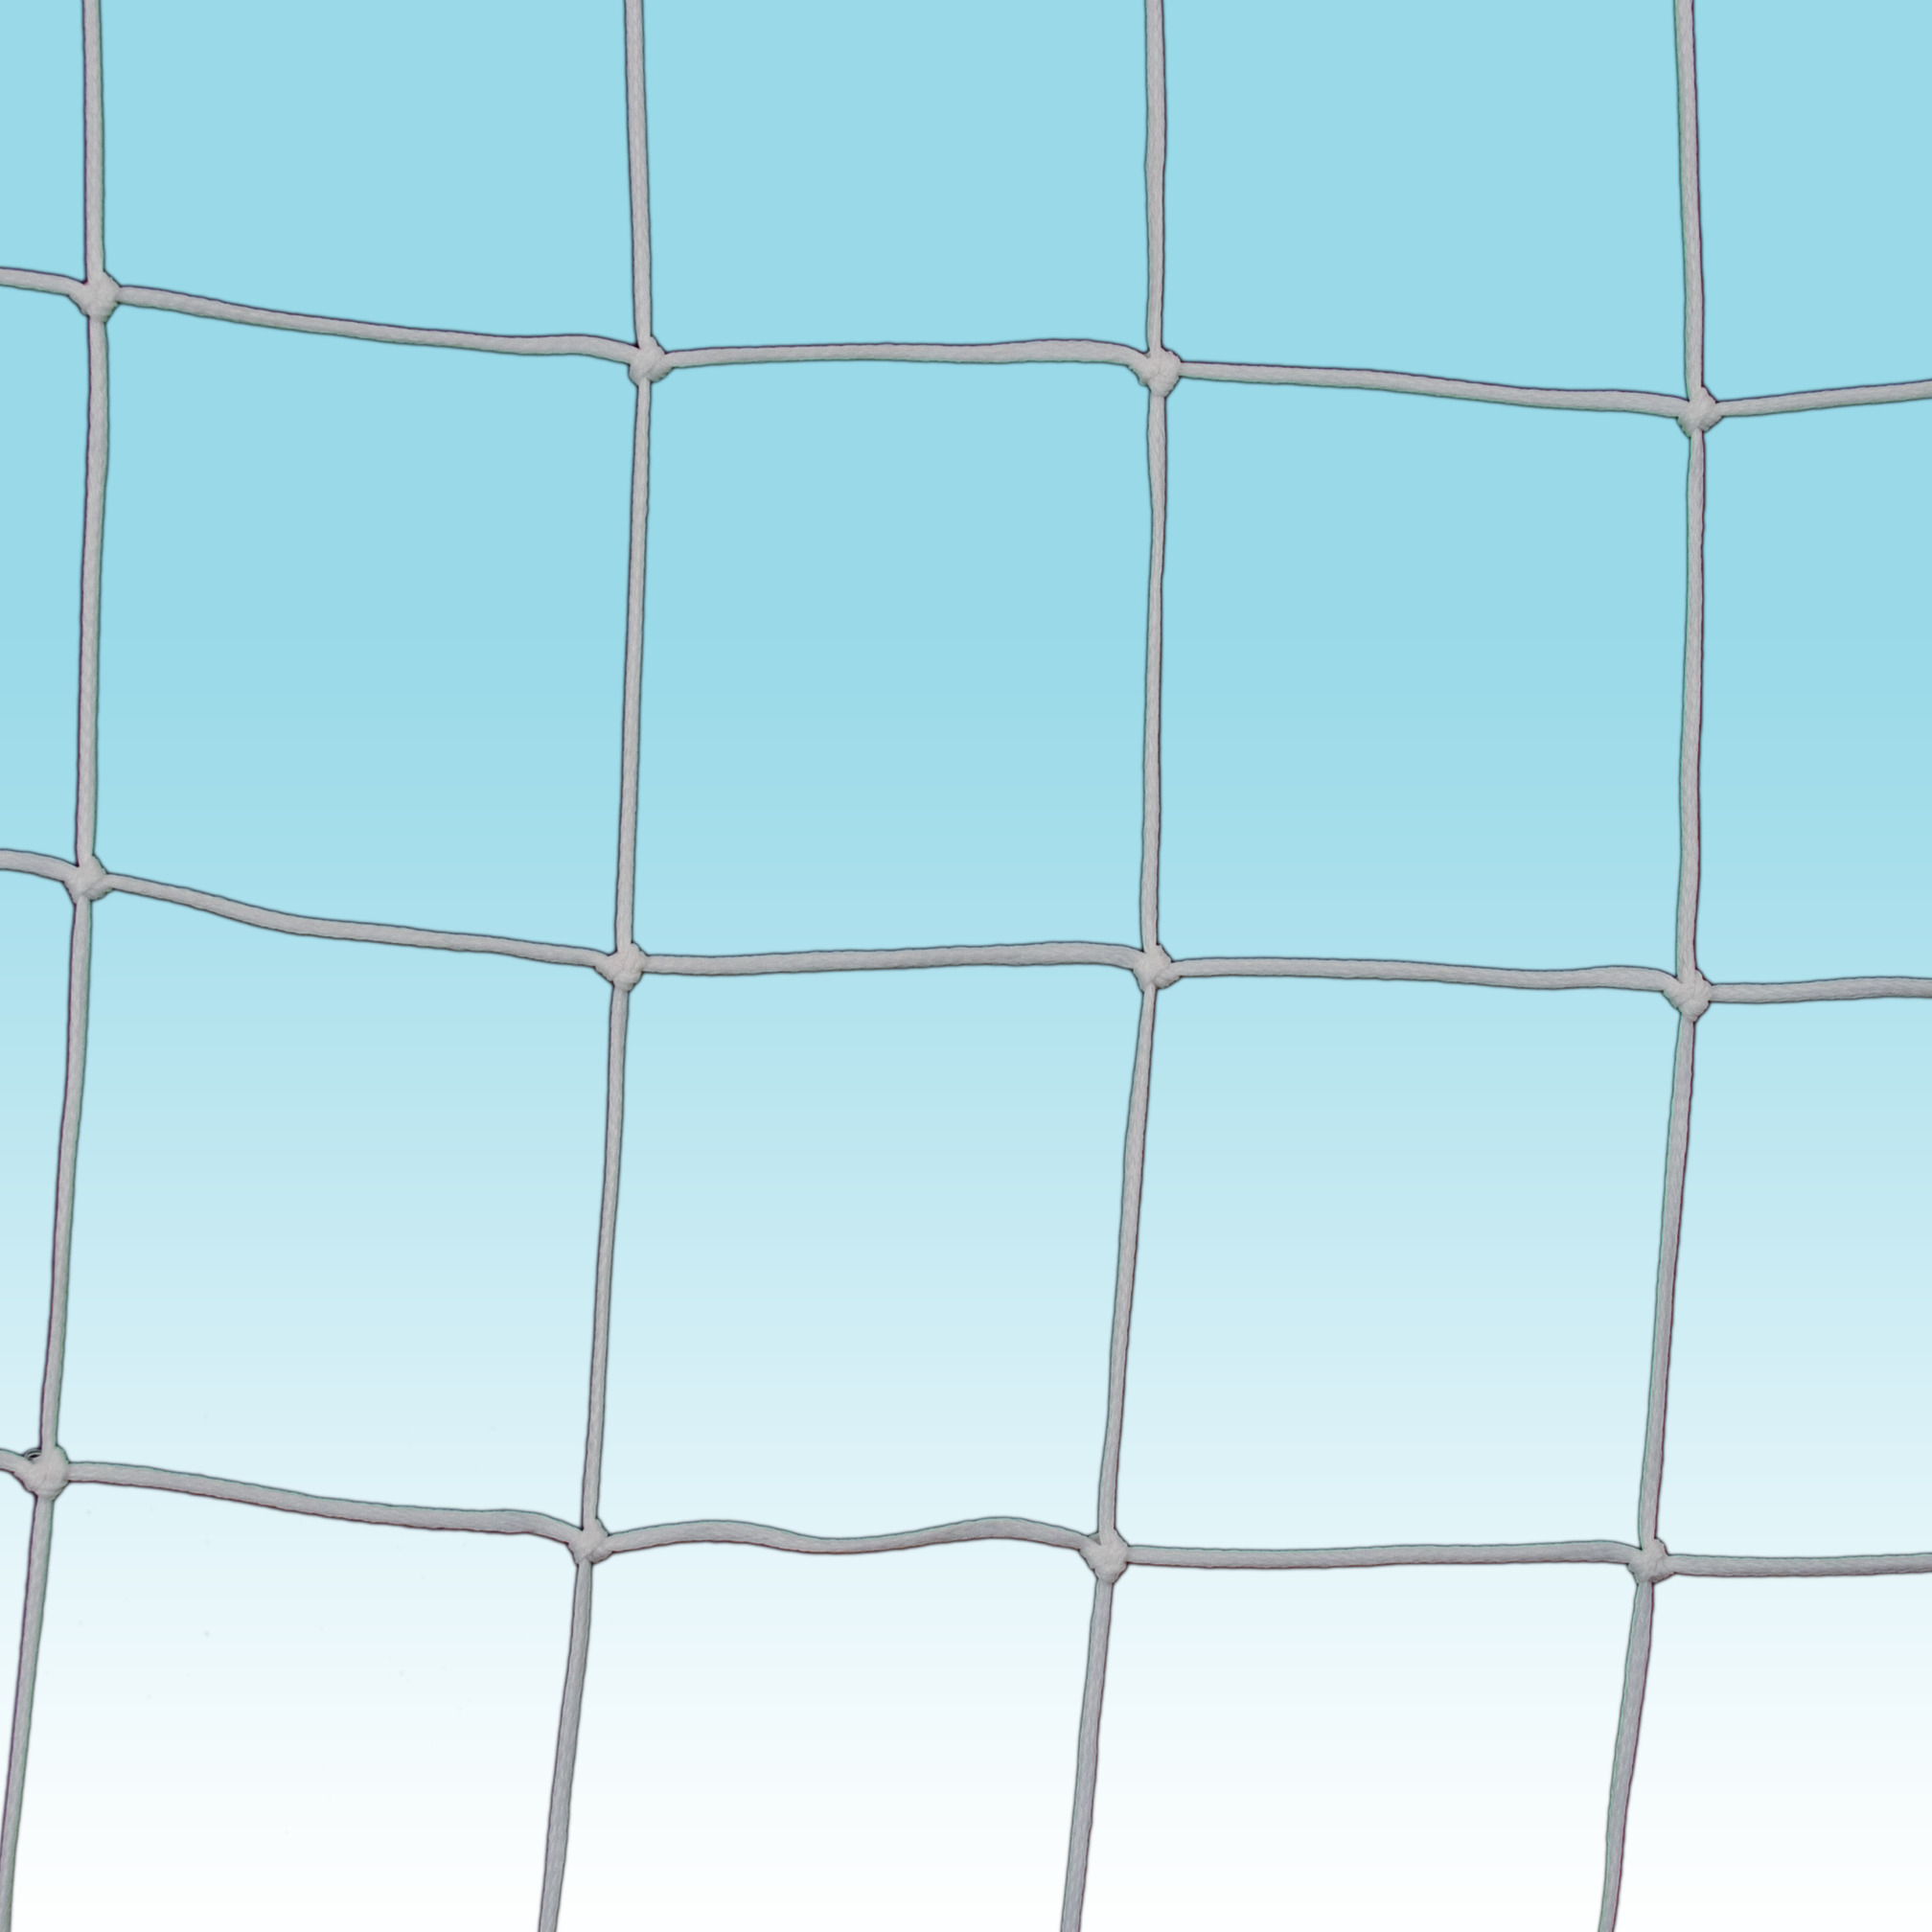 Net for street football goal 300x100 cm, mesh 13x13 cm, 3 mm